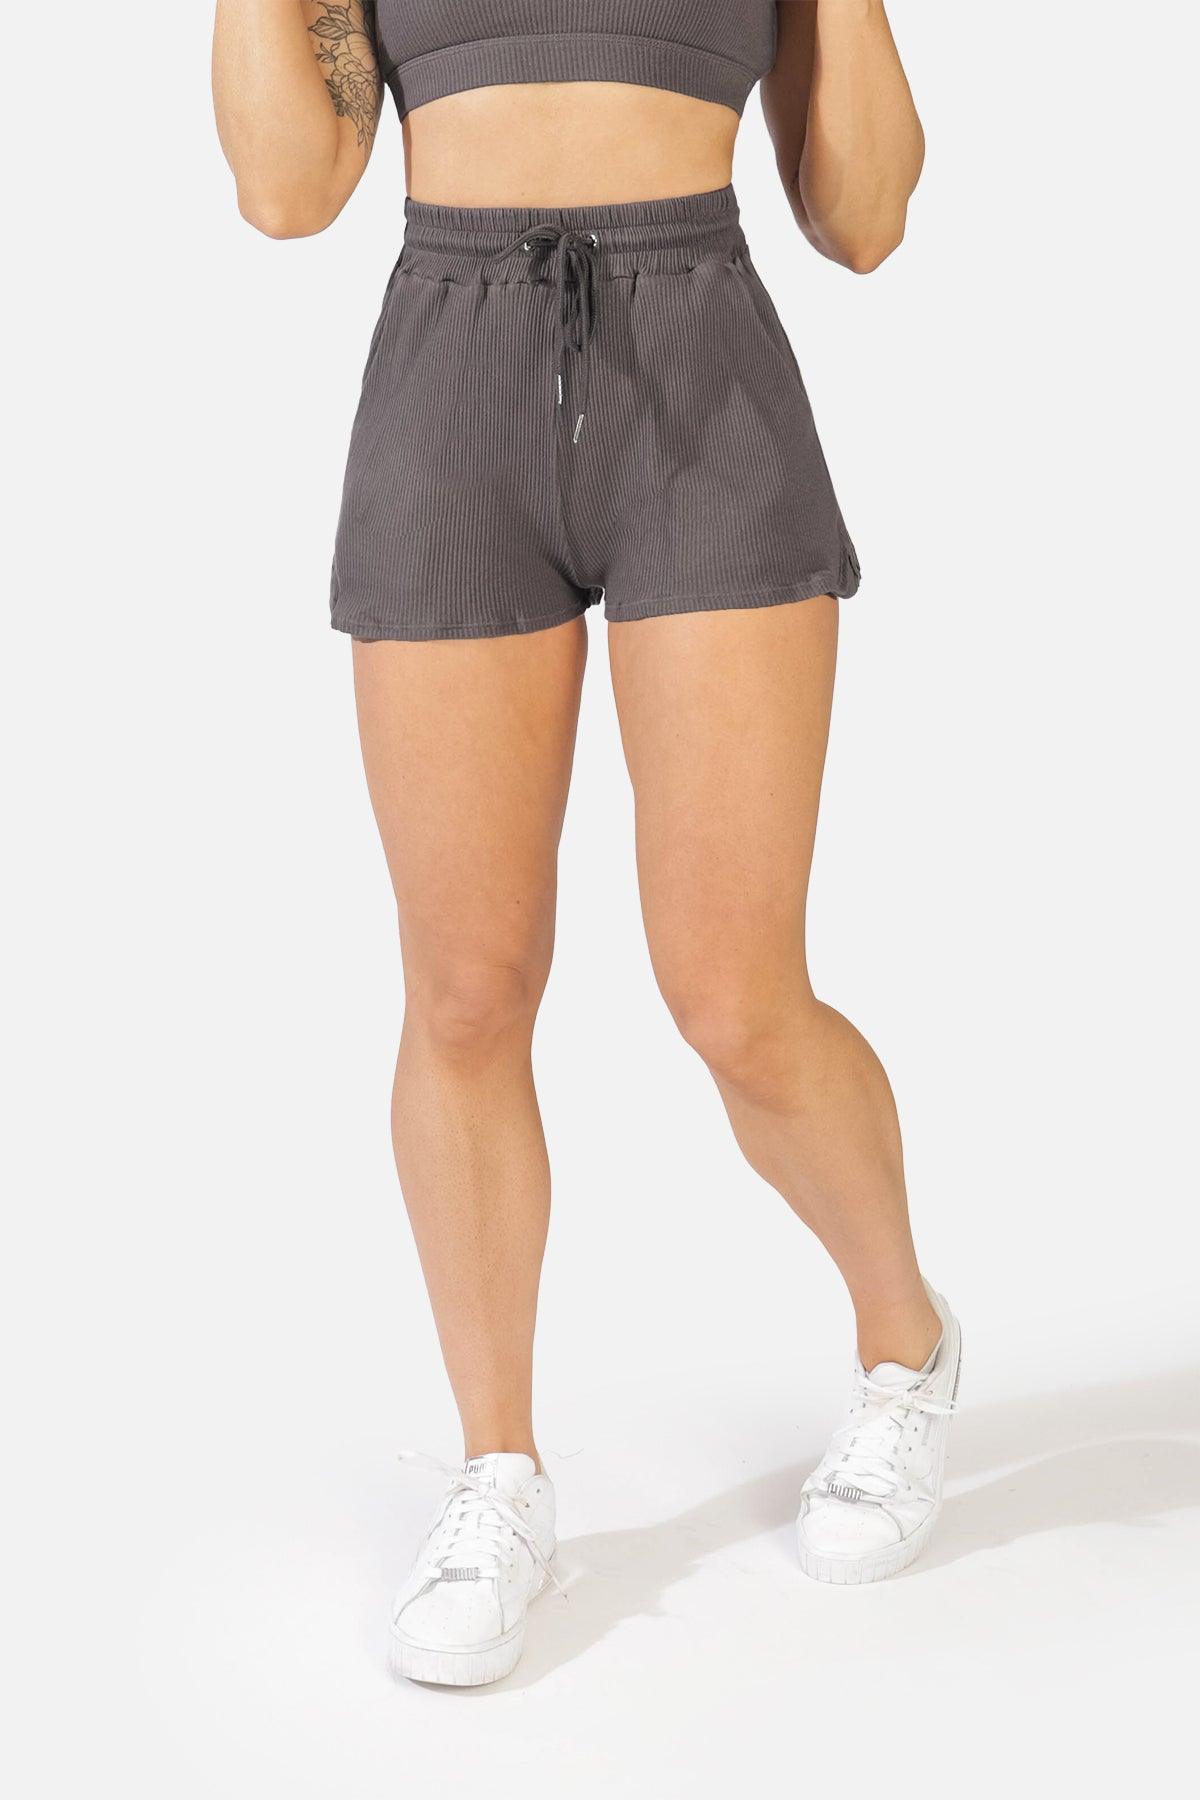 Flowy Shorts -  Canada